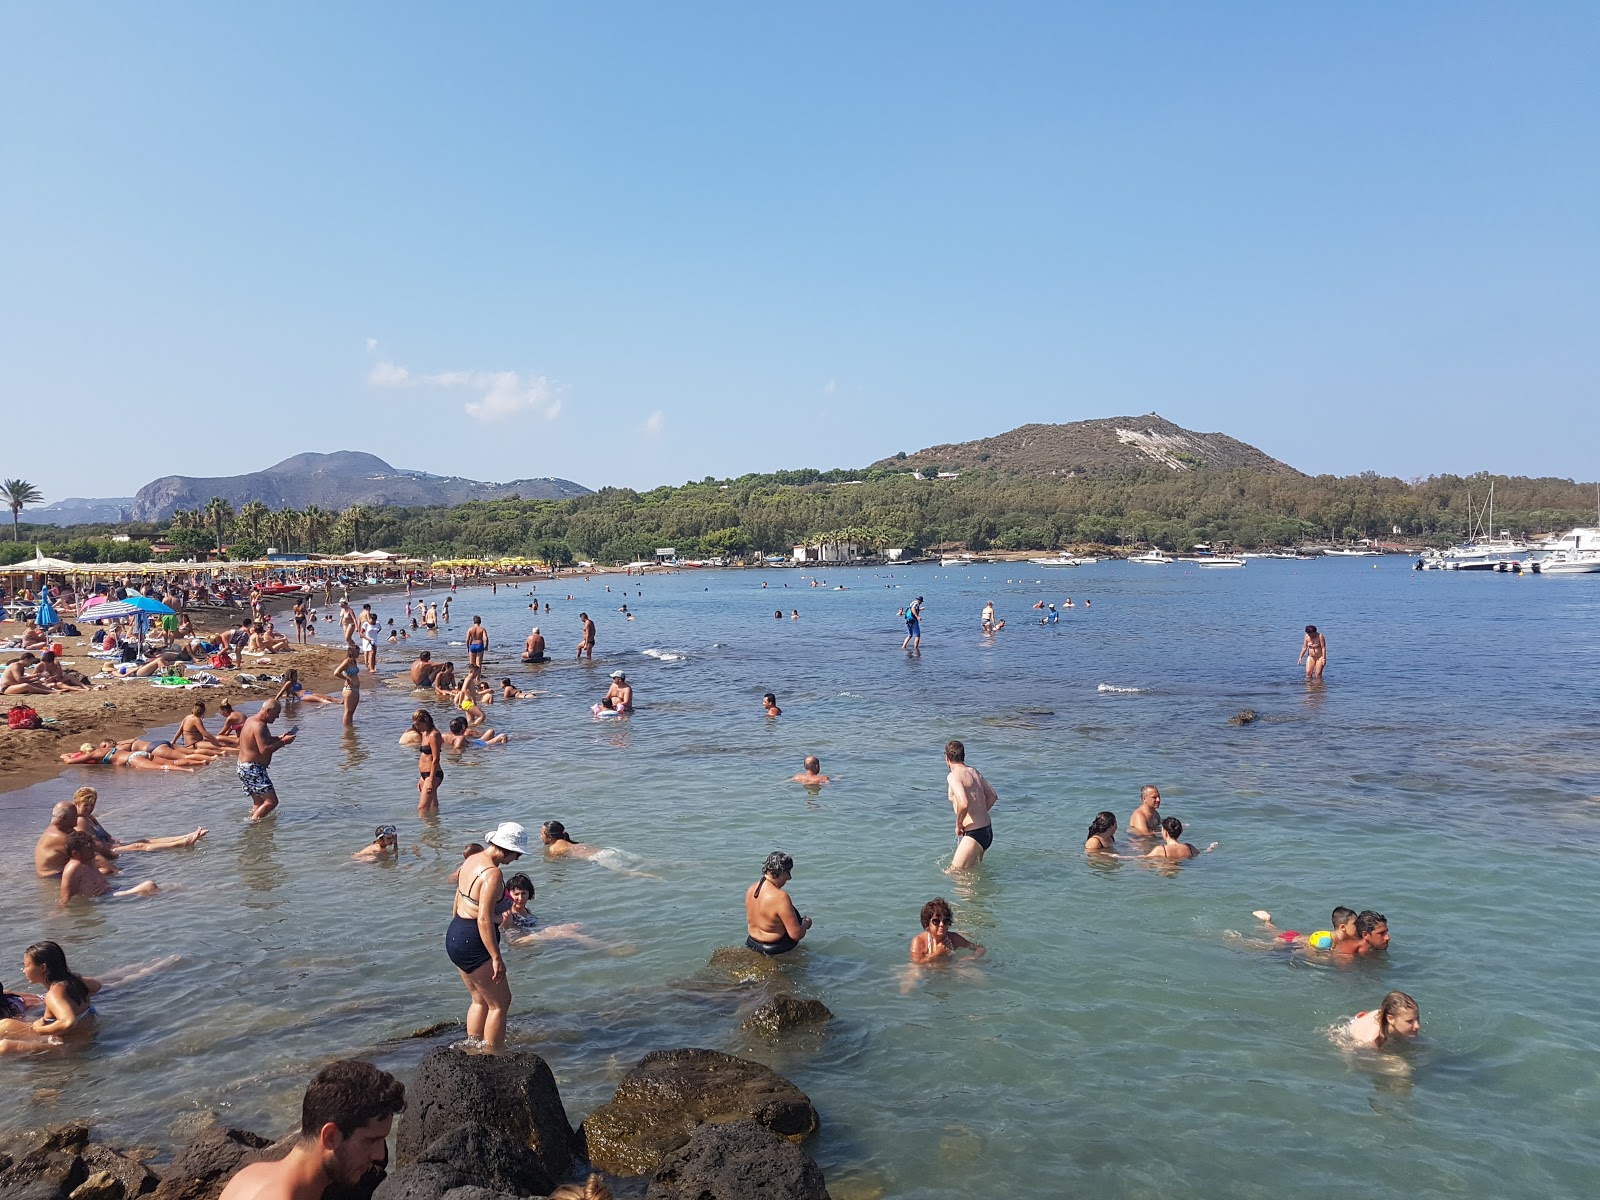 Fotografie cu Acque Calde beach - locul popular printre cunoscătorii de relaxare